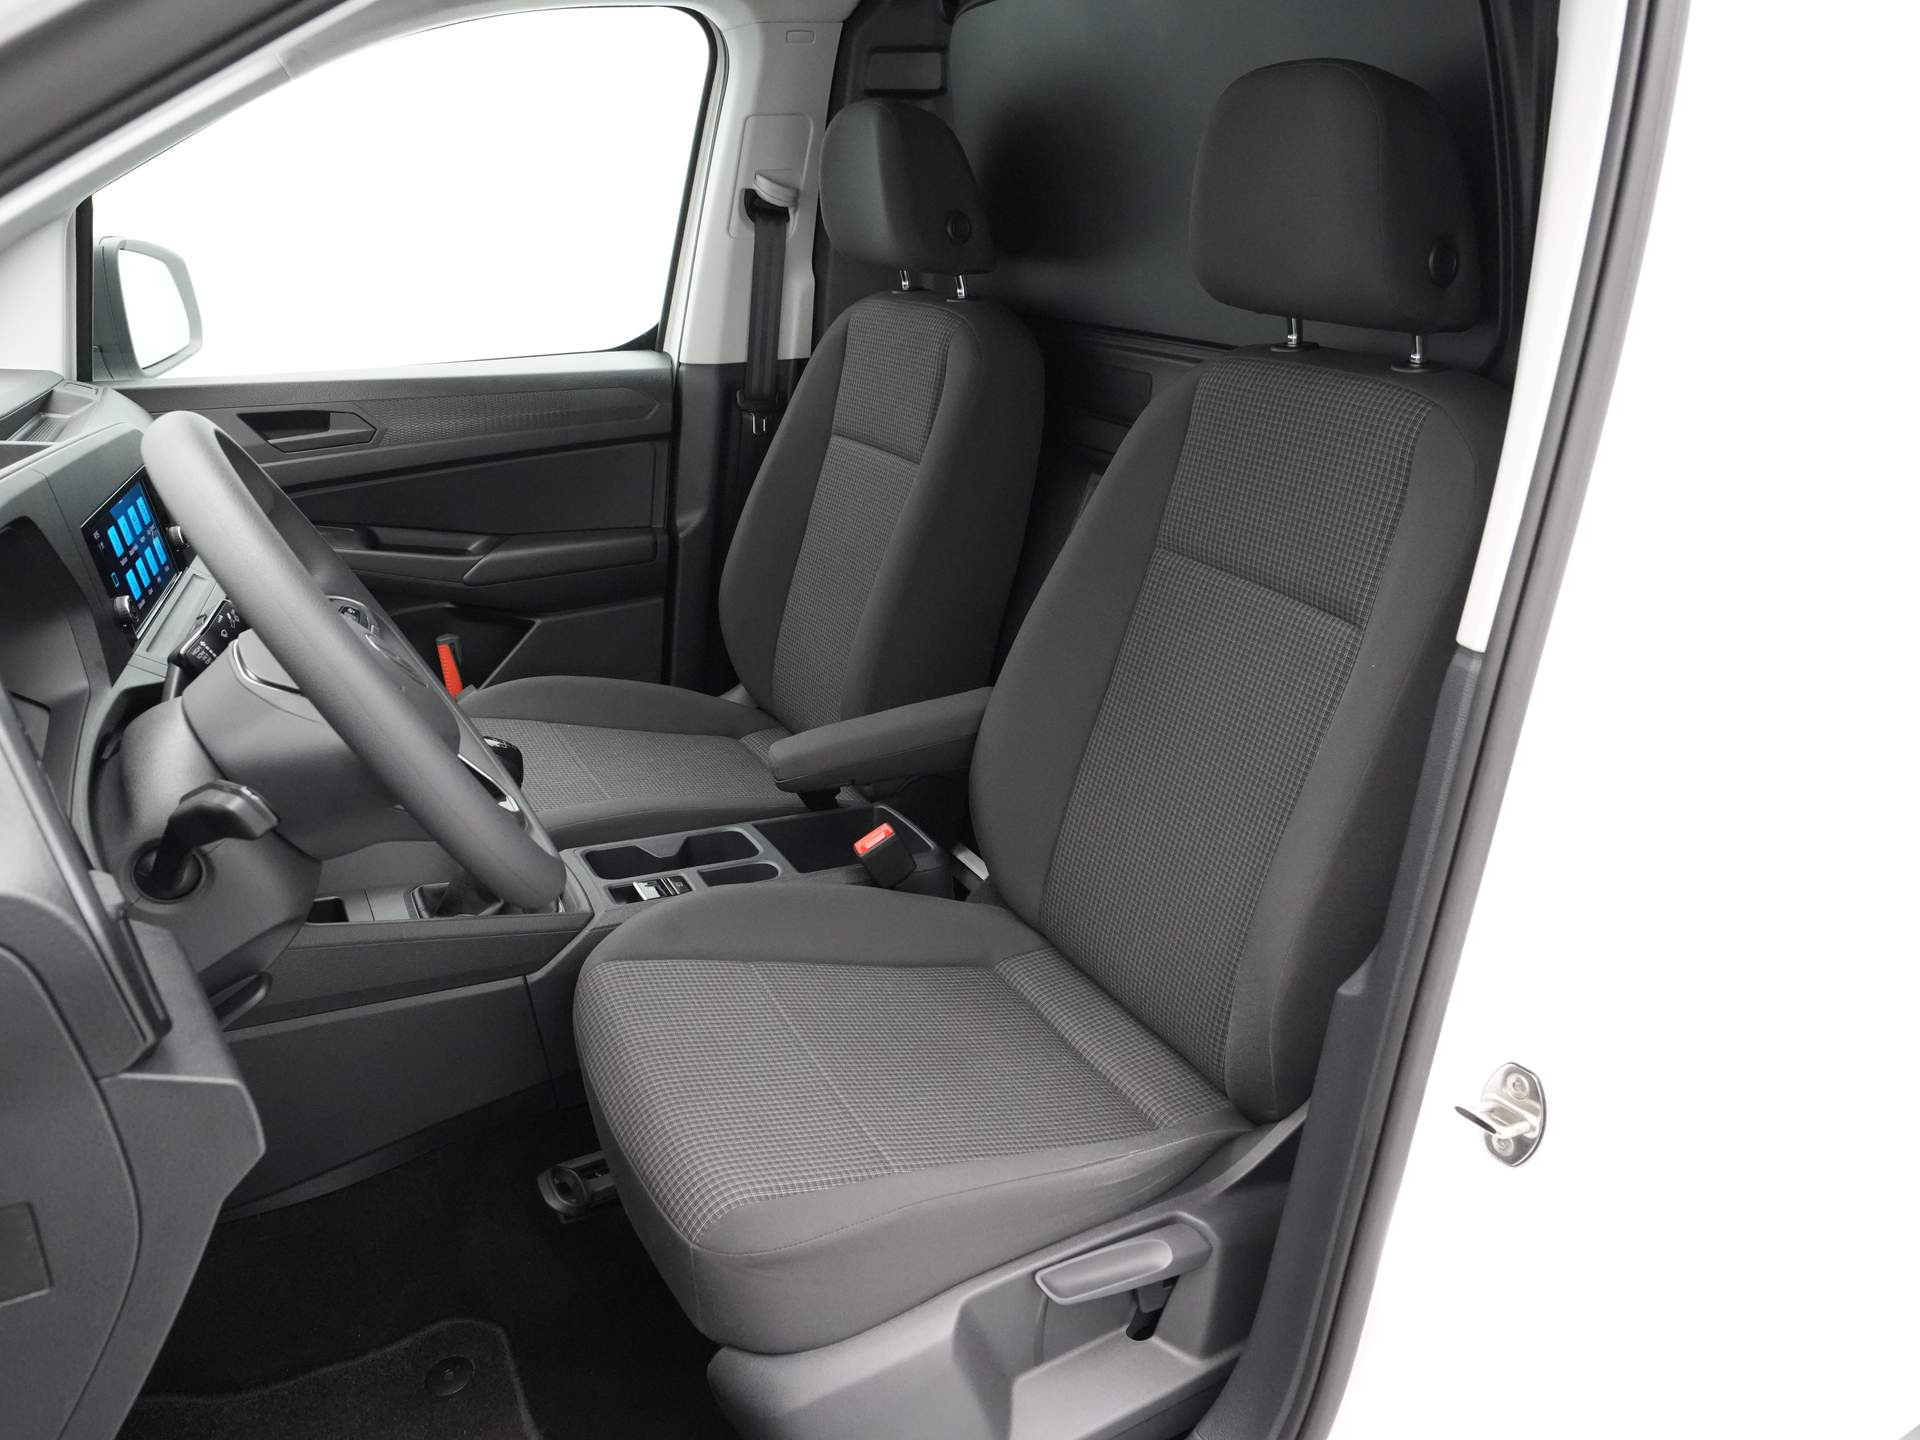 Volkswagen - Caddy Cargo 2.0 TDI Comfort - 2021